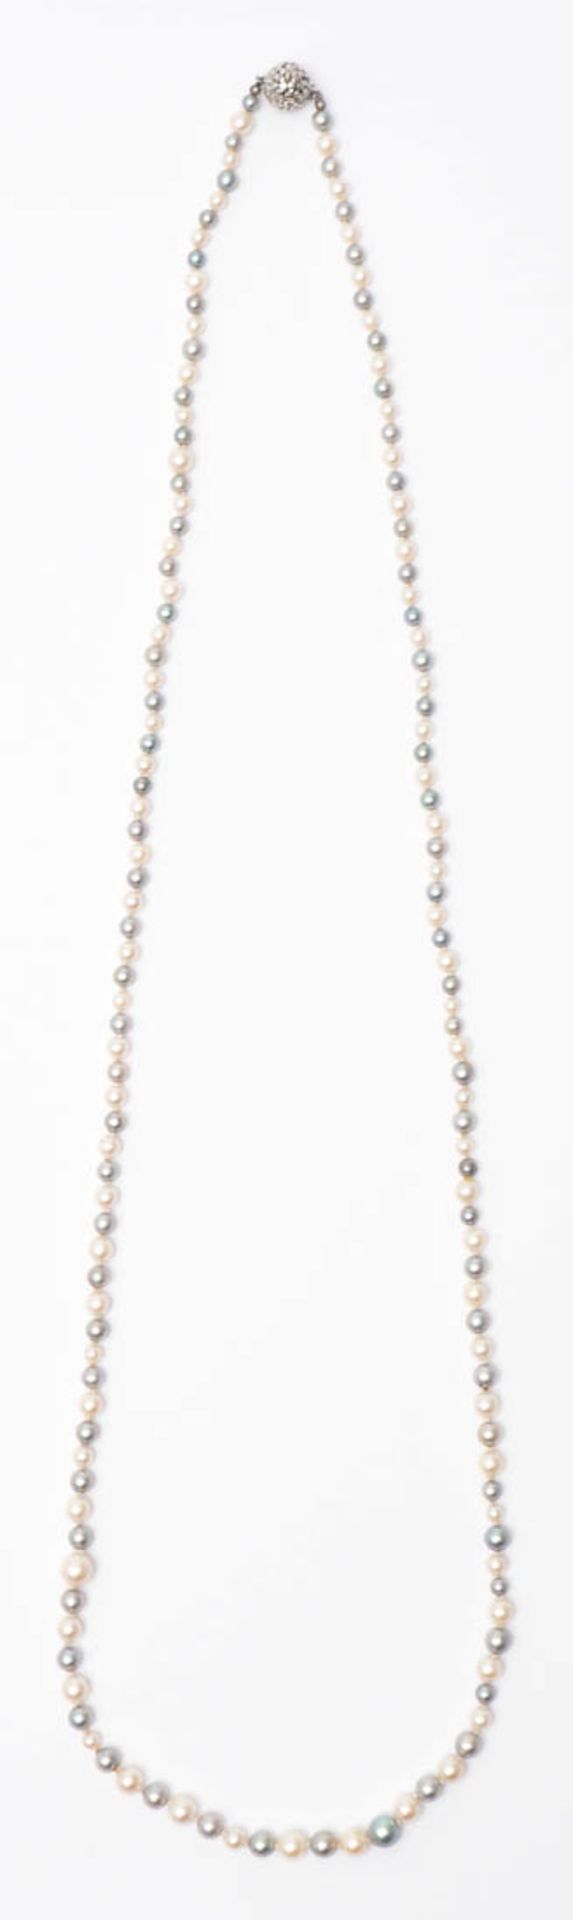 Zuchtperlkette Graue und weiße Perlen von feinem Lüster (Durchm.3-4mm). Kugelförmiges - Image 2 of 2